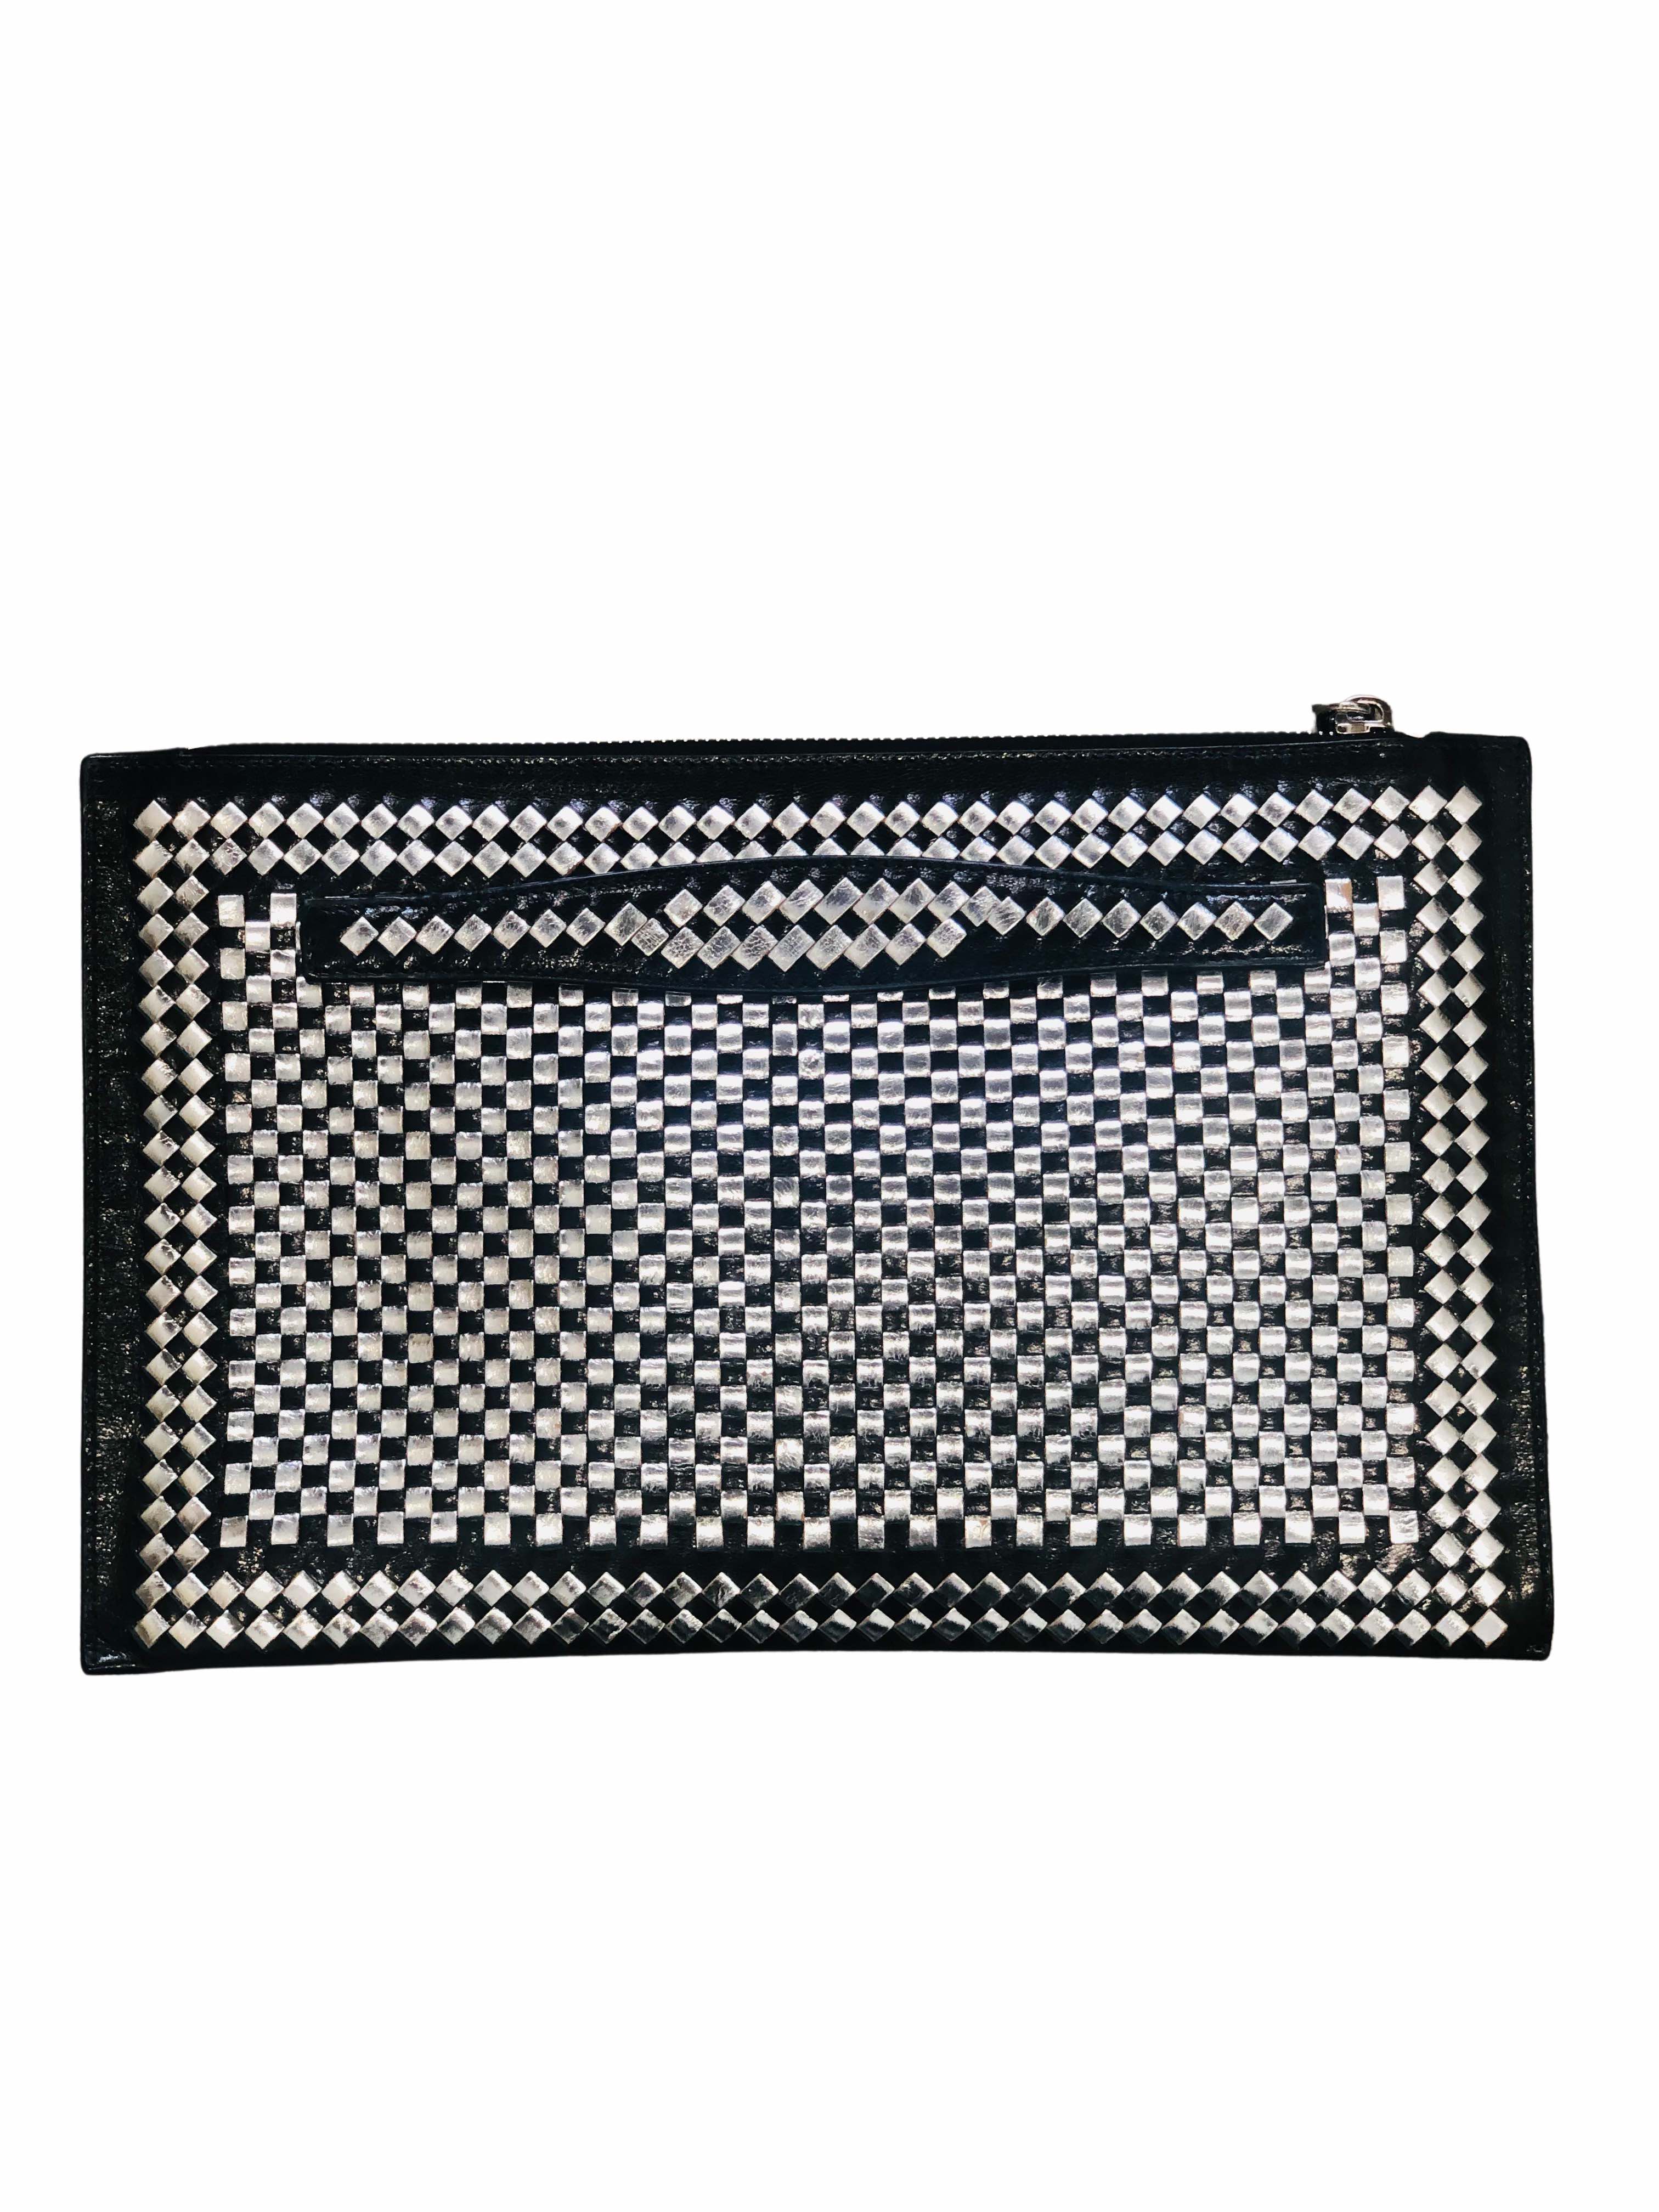 Vintage Prada Black and Silver Woven Madras Clutch Bag by Prada